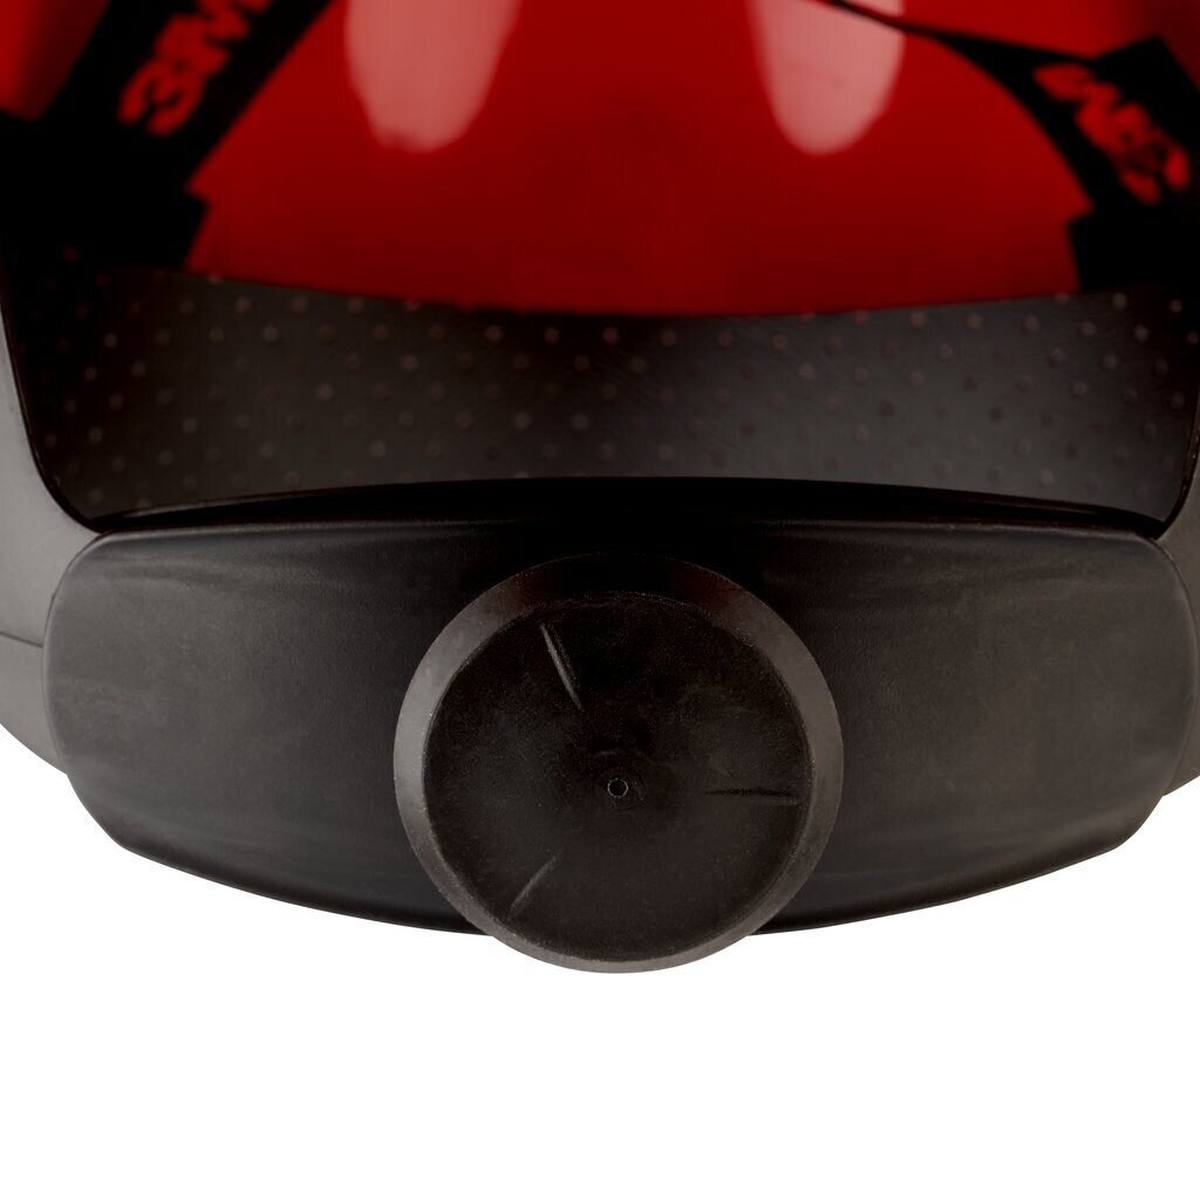 elmetto di sicurezza 3M G3000 G30NUR di colore rosso, ventilato, con uvicatore, cricchetto e cinturino in plastica per saldatura